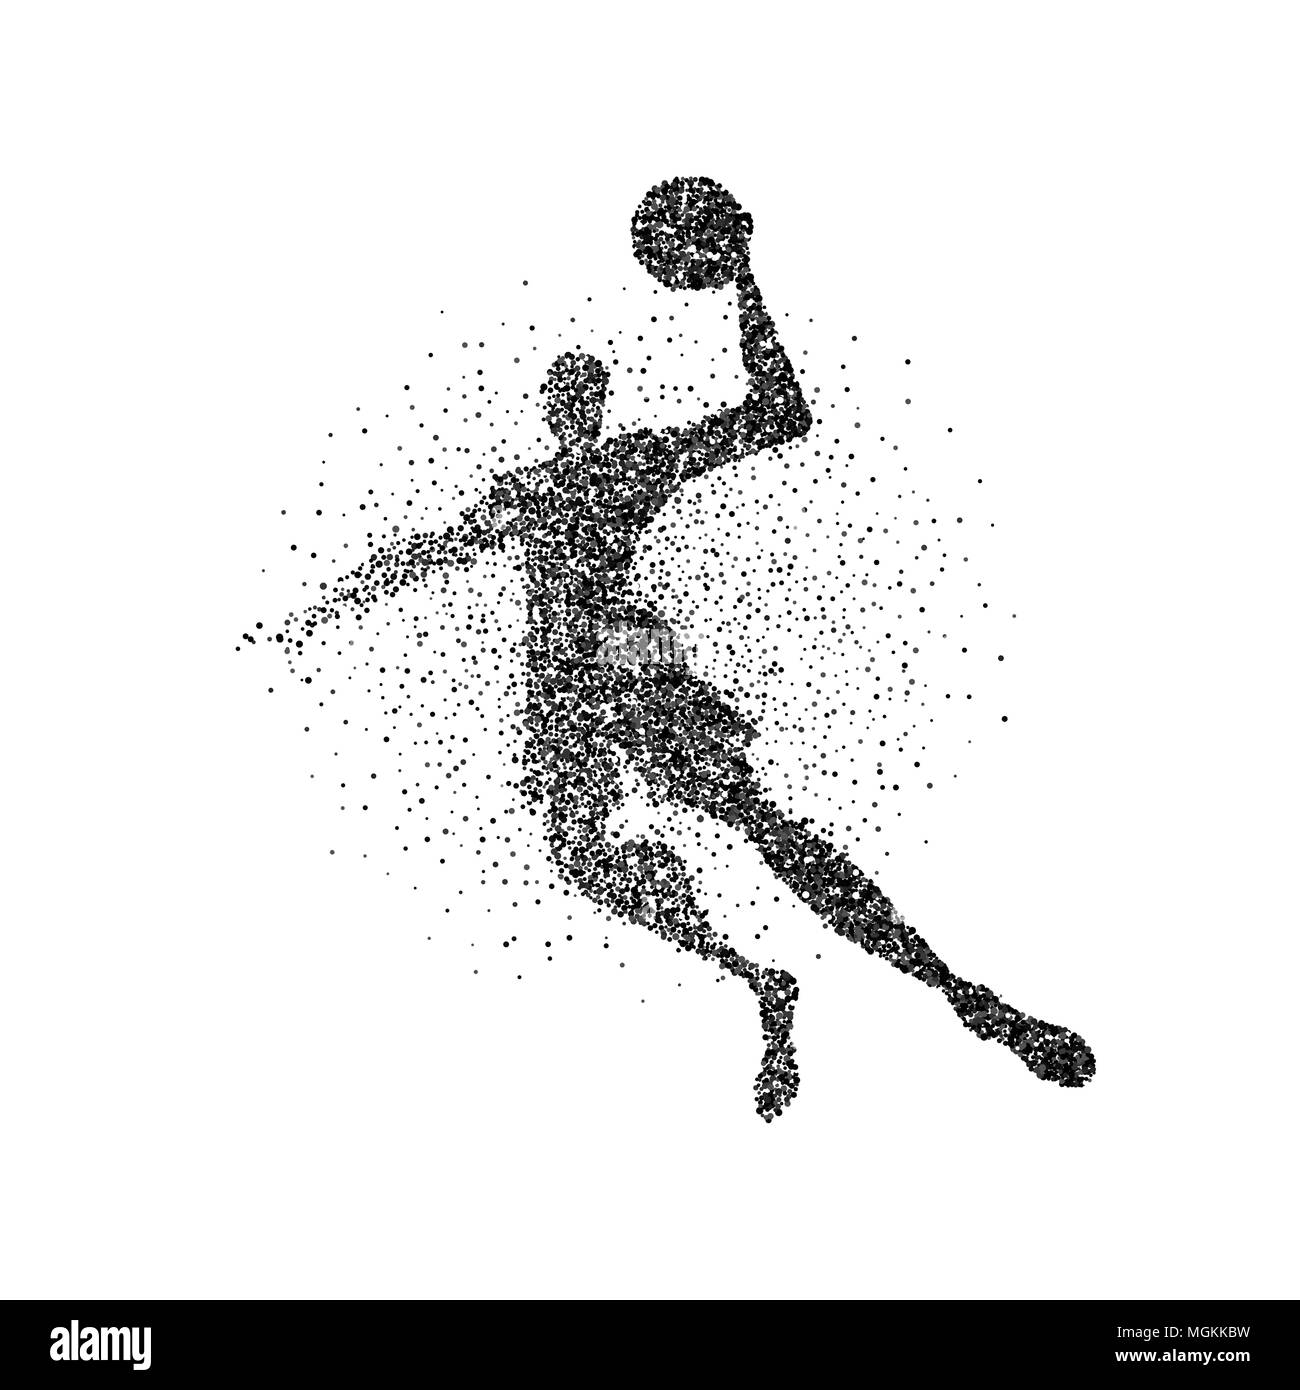 Basketball player Silhouette aus schwarzem Partikelfilter splash auf isolierten Hintergrund. Abstrakte Athlet Mann in Aktion mit Basketball. EPS 10 Vektor. Stock Vektor